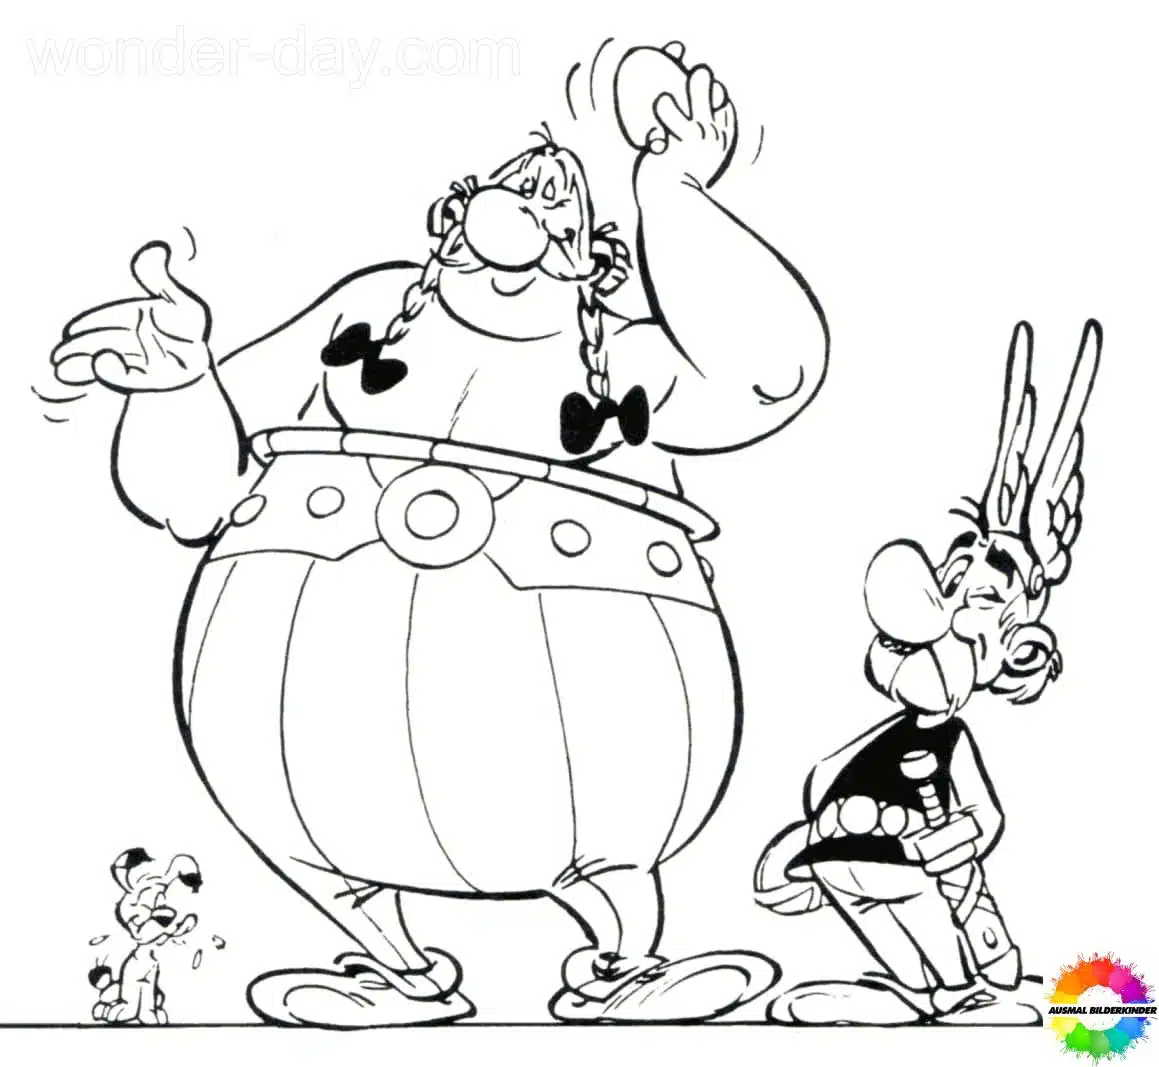 Asterix and Obelix 39